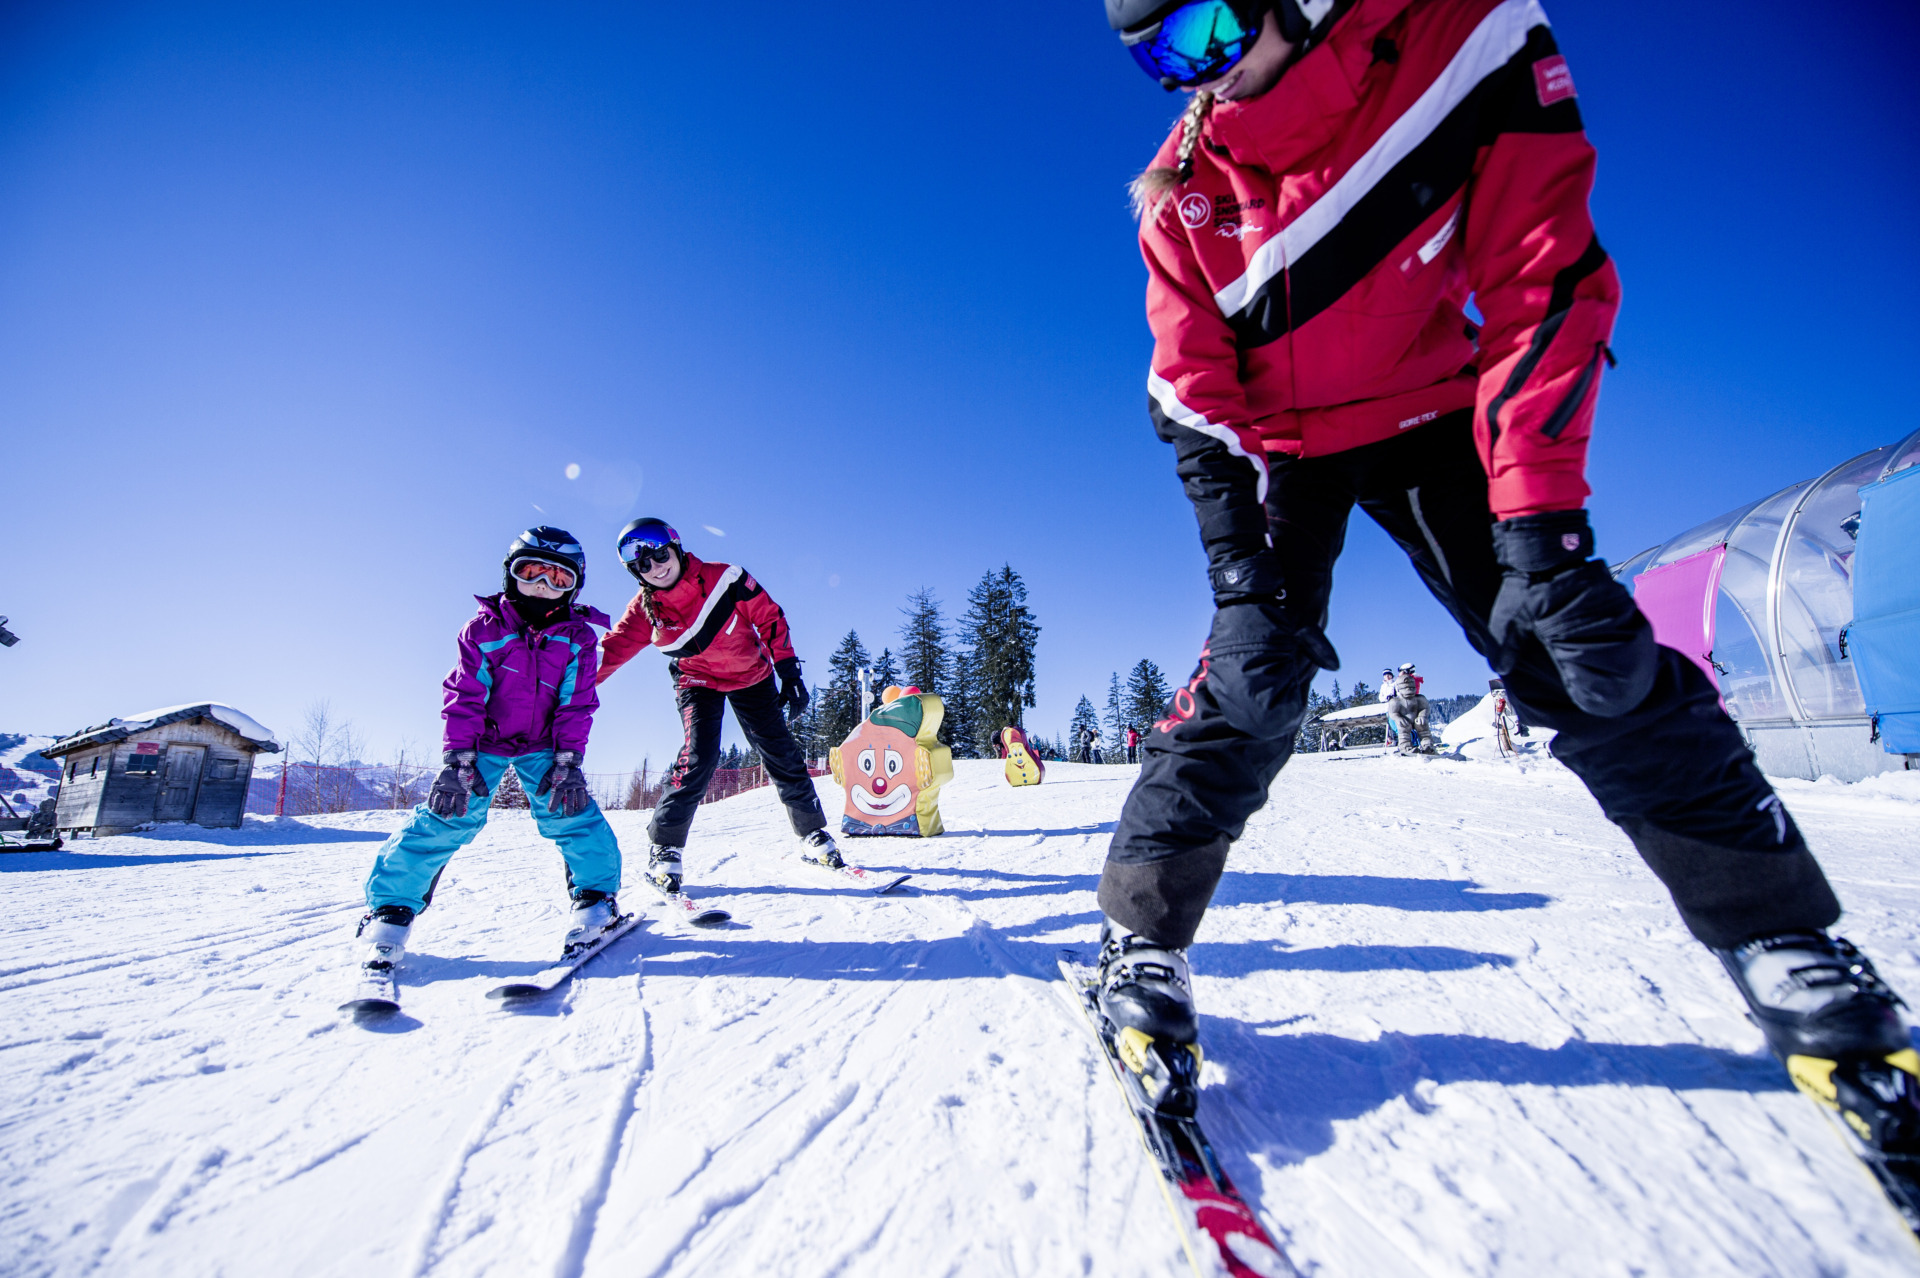 De beste kortingsacties voor wintersport met kinderen in Ski amadé